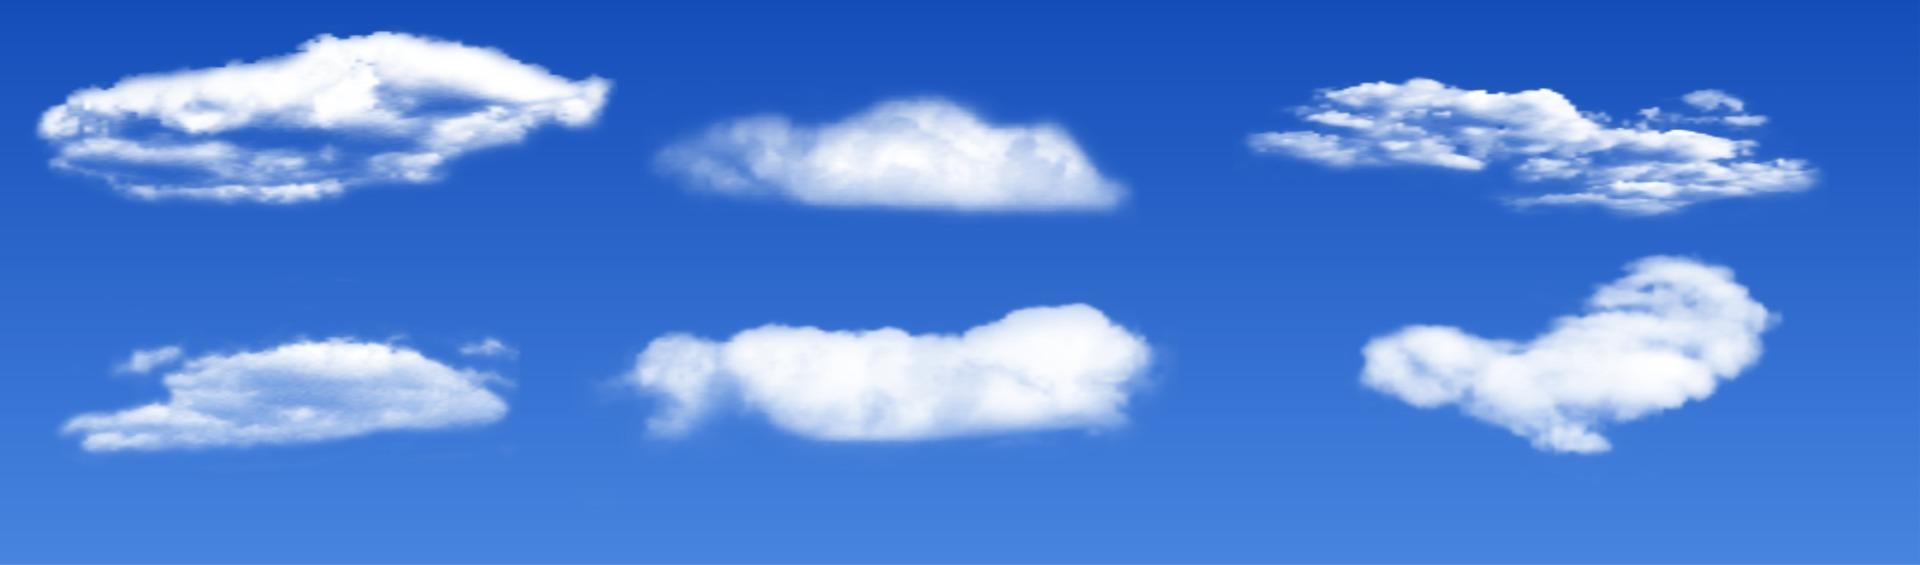 nuages blancs 3d réalistes sur fond bleu vecteur